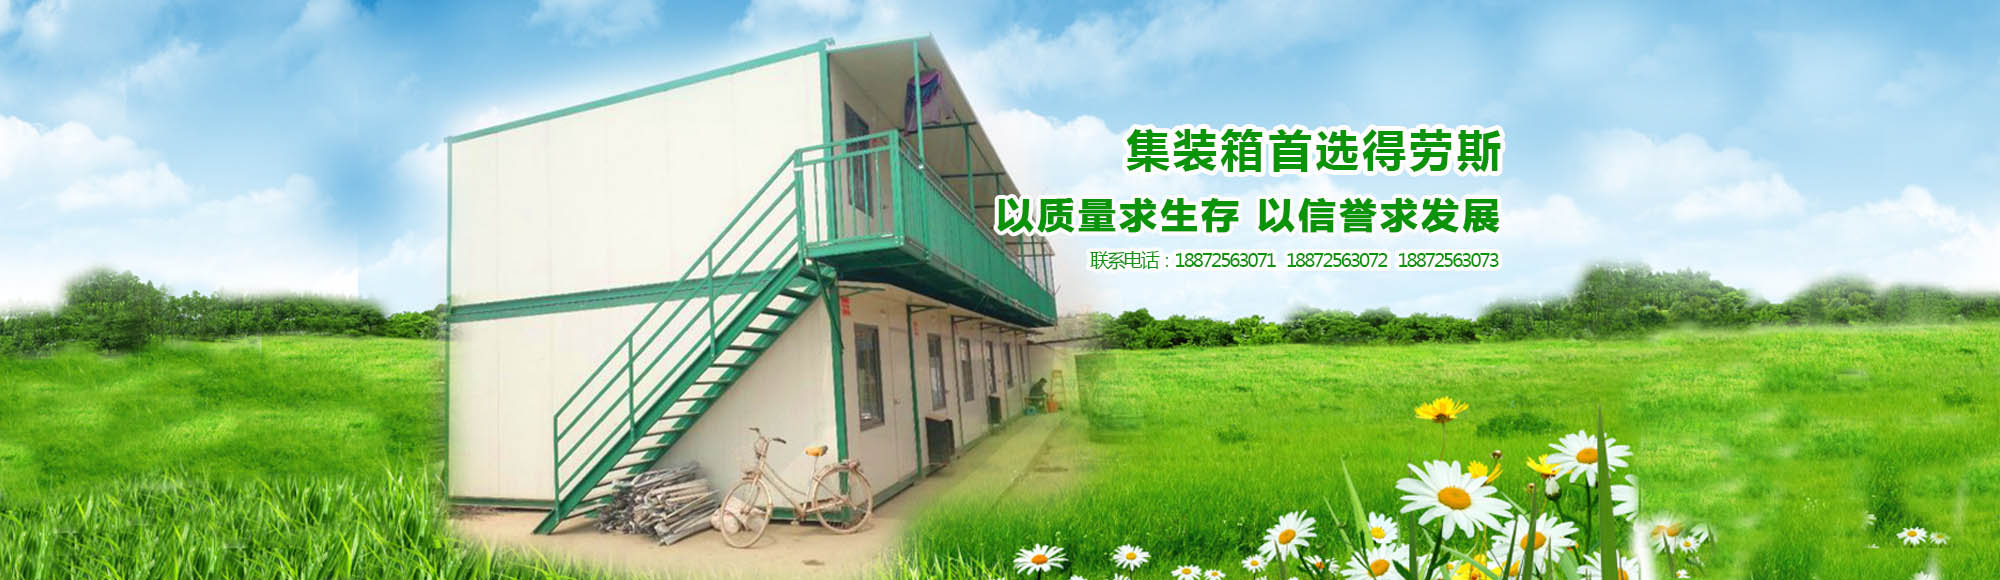 荆州集装箱活动房分享环保节能的原理